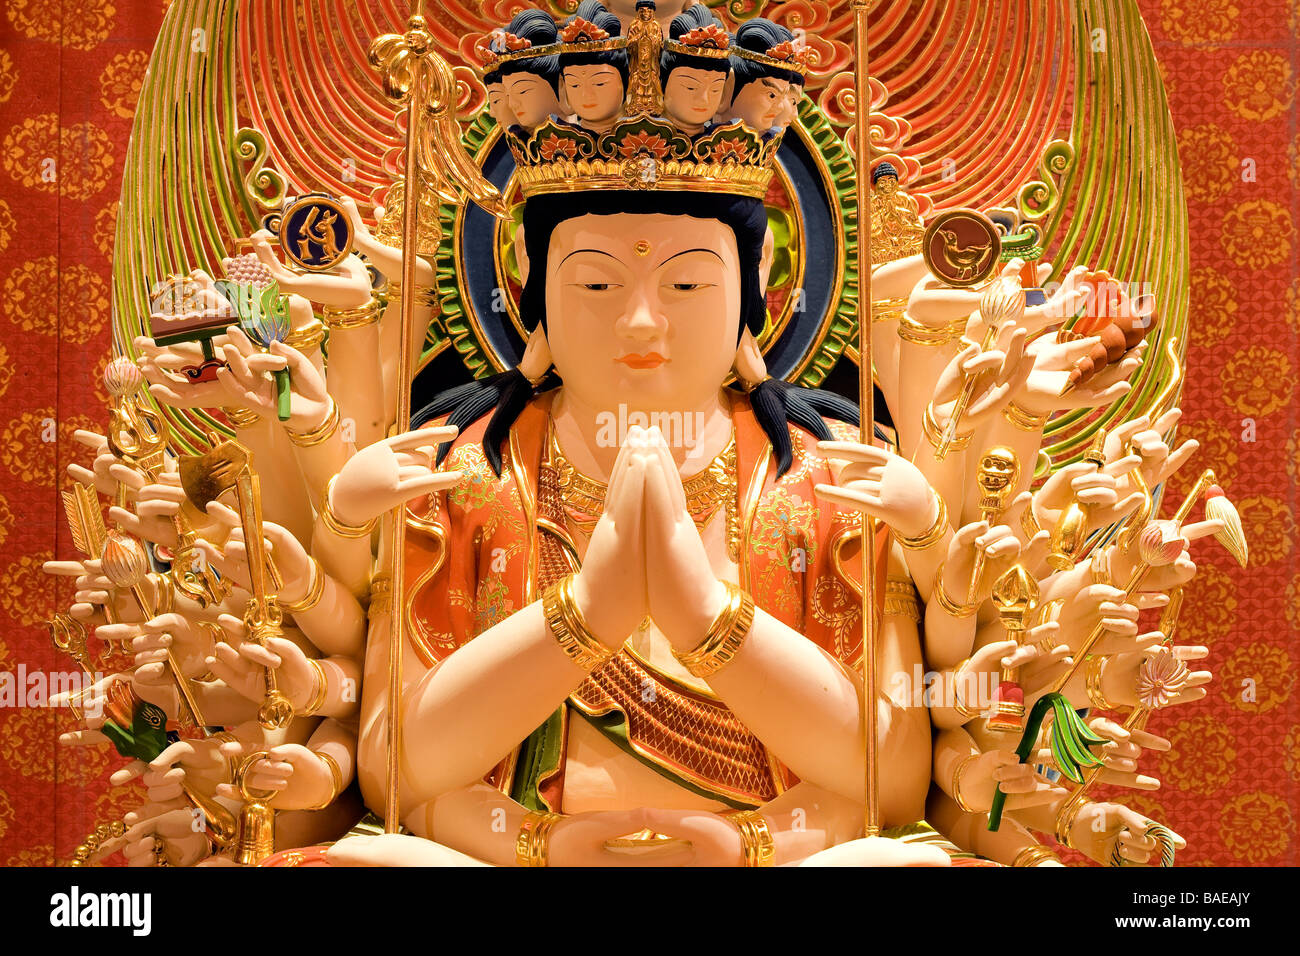 Singapore, Chinatown, Buddha tooth relic temple, statue of Bodhisattva Avalokitesvara Stock Photo